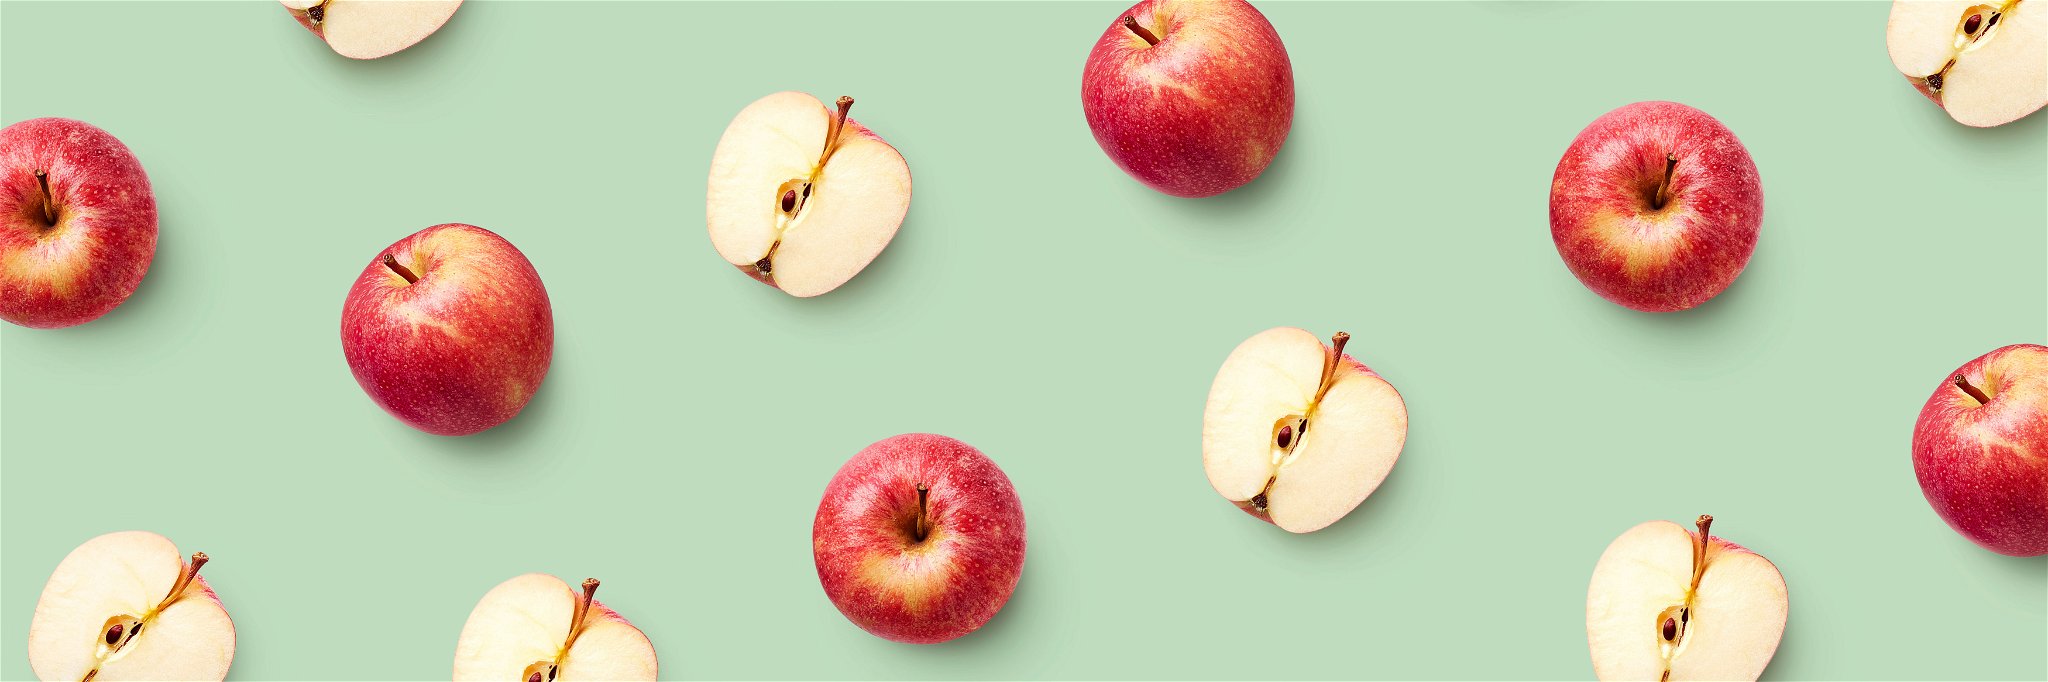 Der Apfel ist ein echtes Superfood und damit die perfekte Alternative zu Beeren aus dem Import.